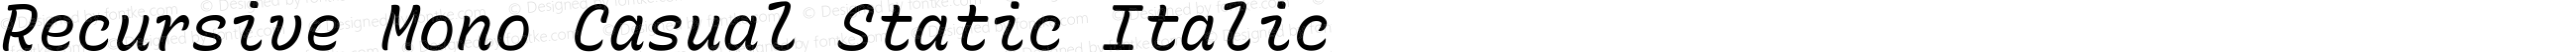 Recursive Mono Casual Static Italic